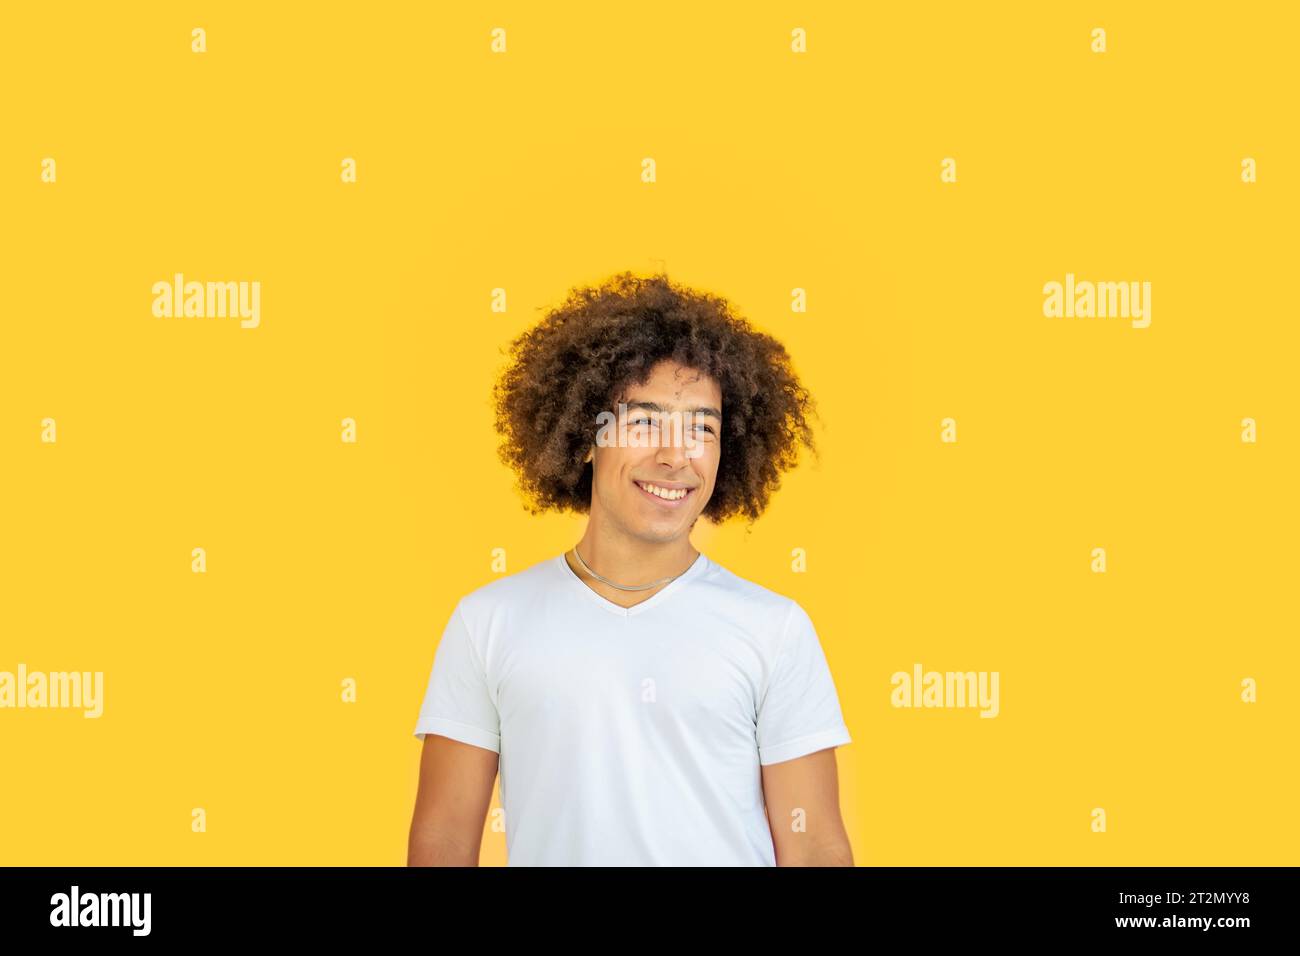 Porträt eines lächelnden jungen jungen Jugendlichen gemischten Rassen-Jugendlichen der afro-italienischen Generation Z mit dicken lockigen Haaren auf gelbem Hintergrund. Glückliche multiethnische Jugendliche Stockfoto